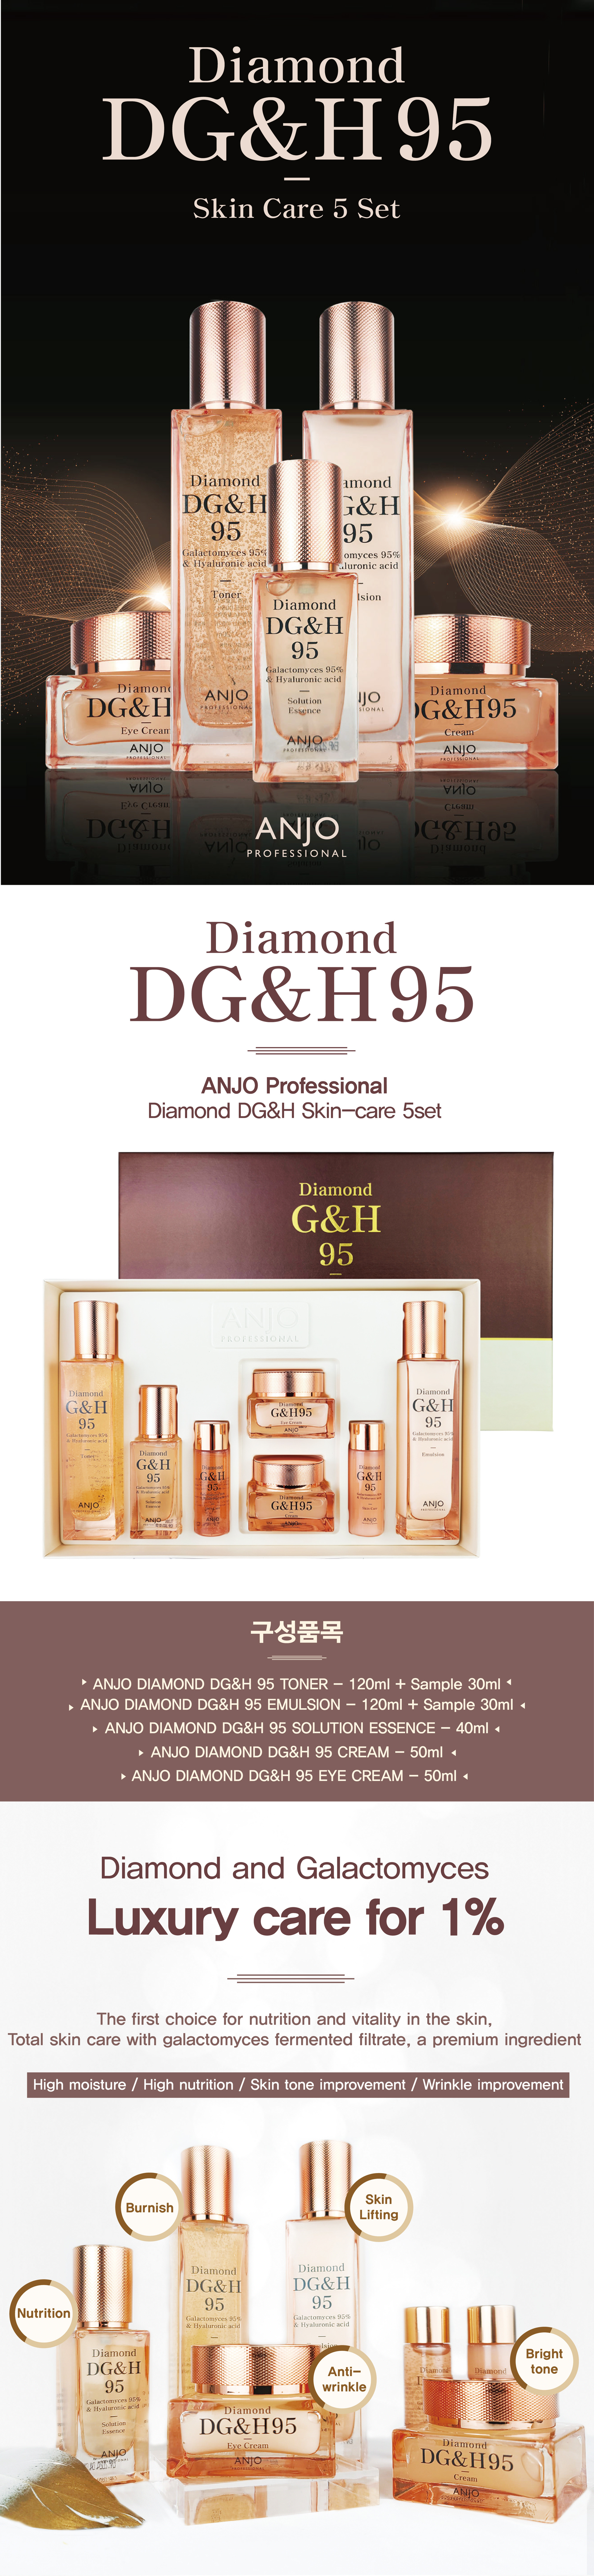 ANJO Diamond DG&H 95 Skin-care 5set - 수지코리아